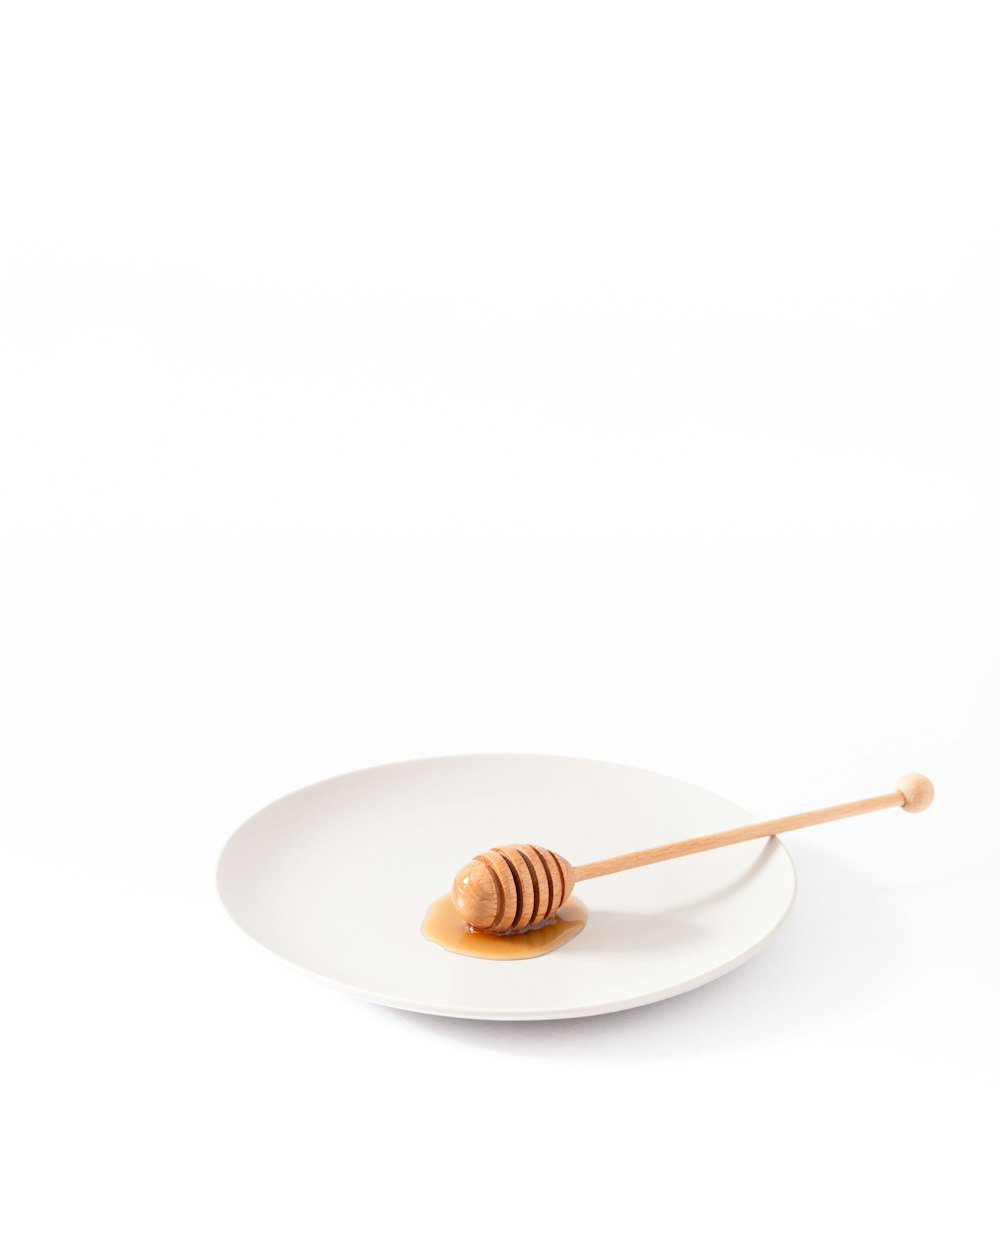 cucharón de miel en plato vacío